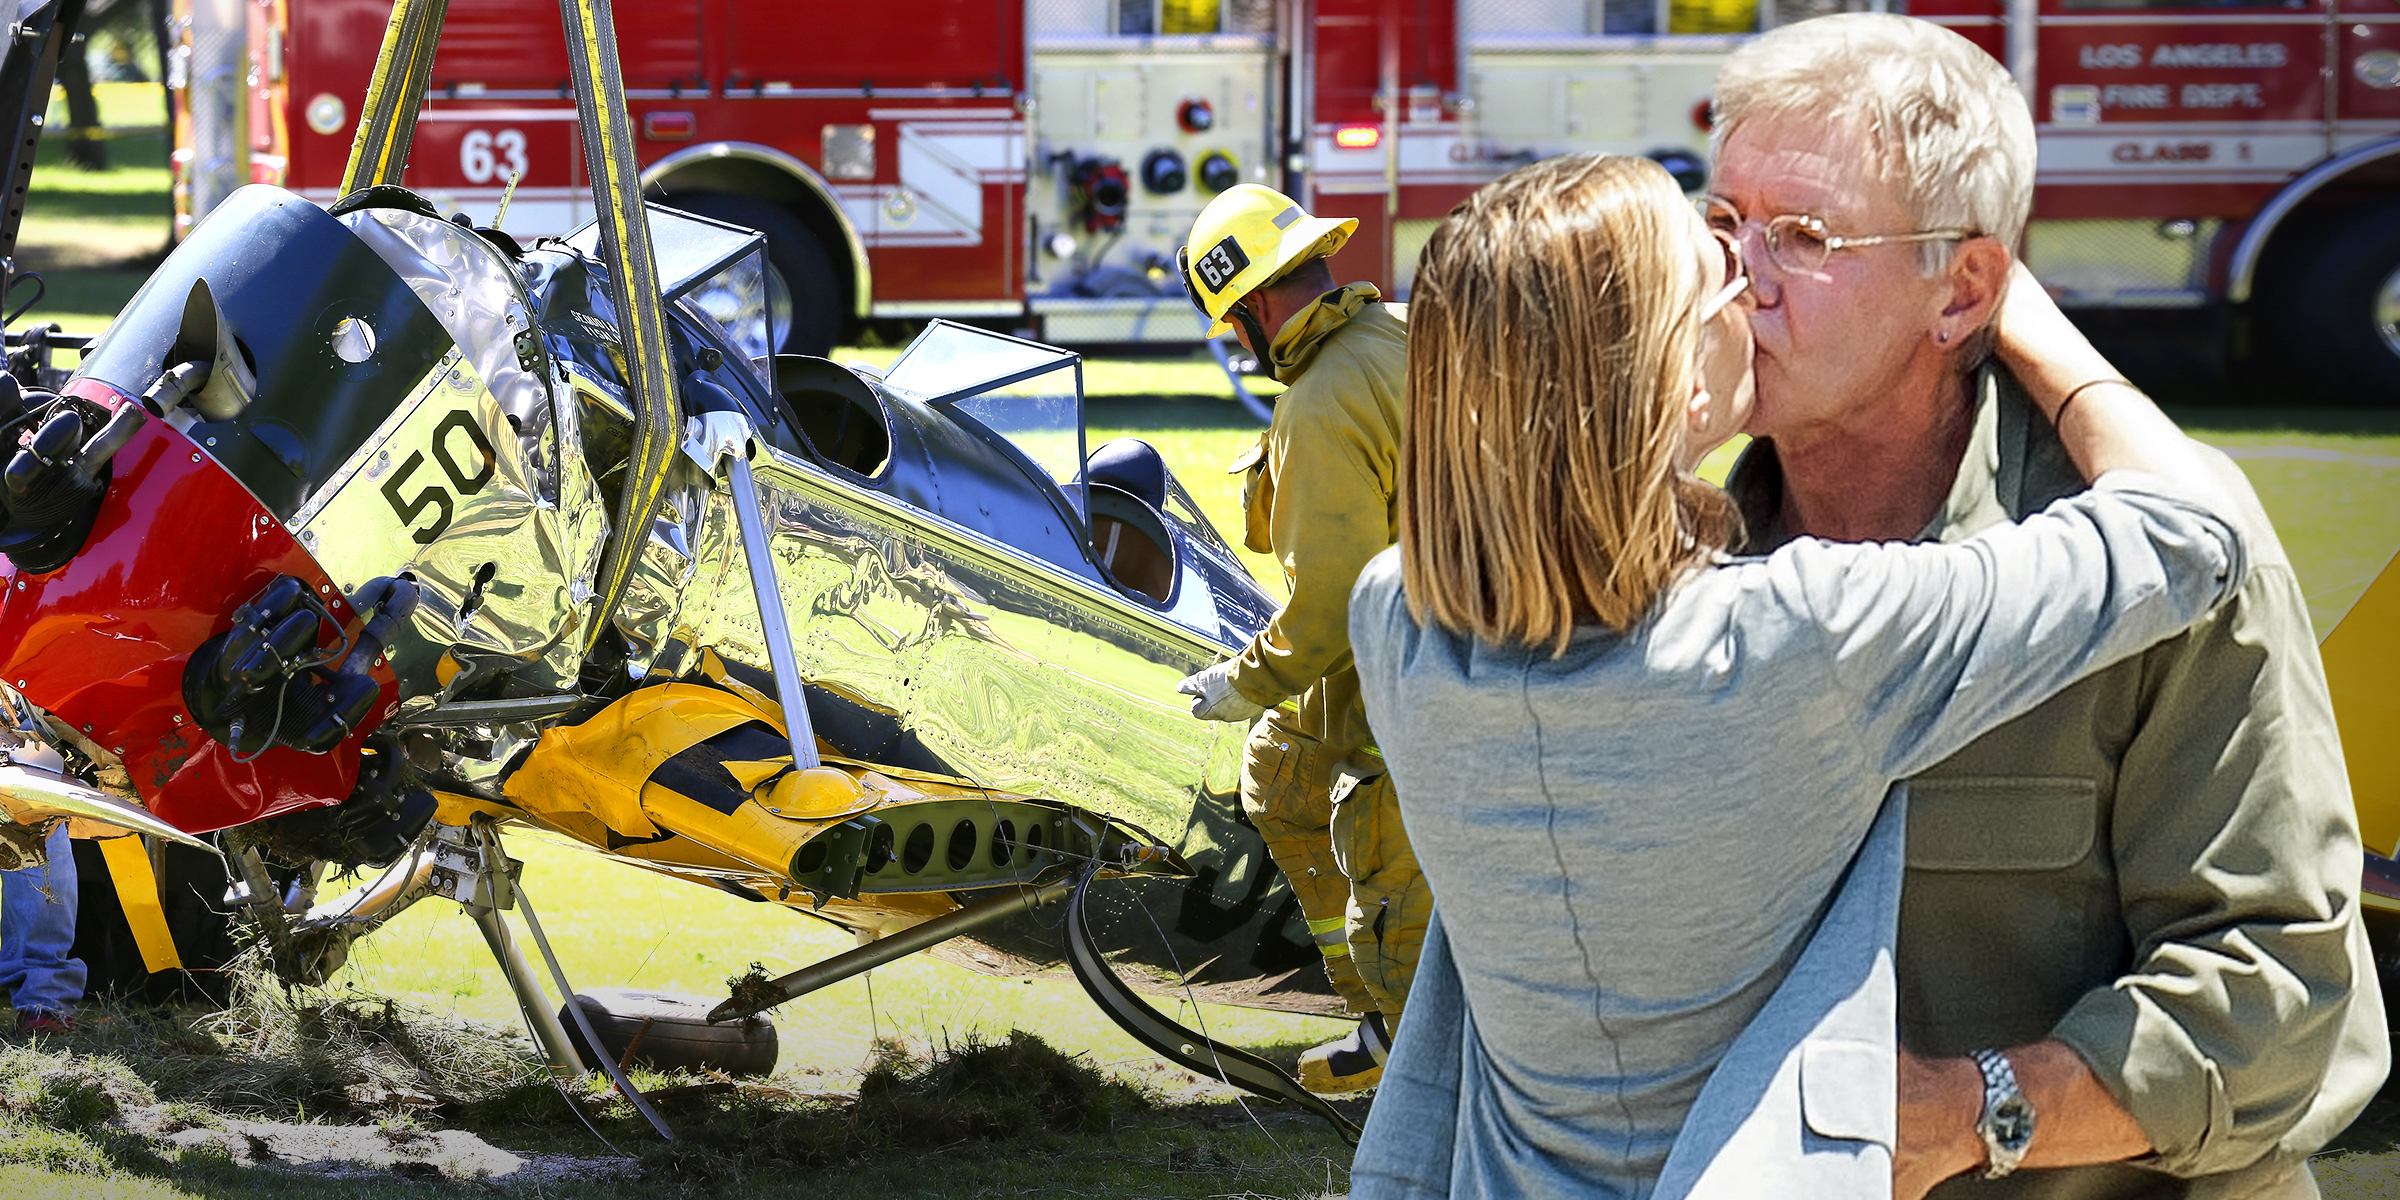 L'avion monomoteur piloté par Harrison Ford, 2015 | Calista Flockhart et Harrison Ford, 2011 | Source : Getty Images